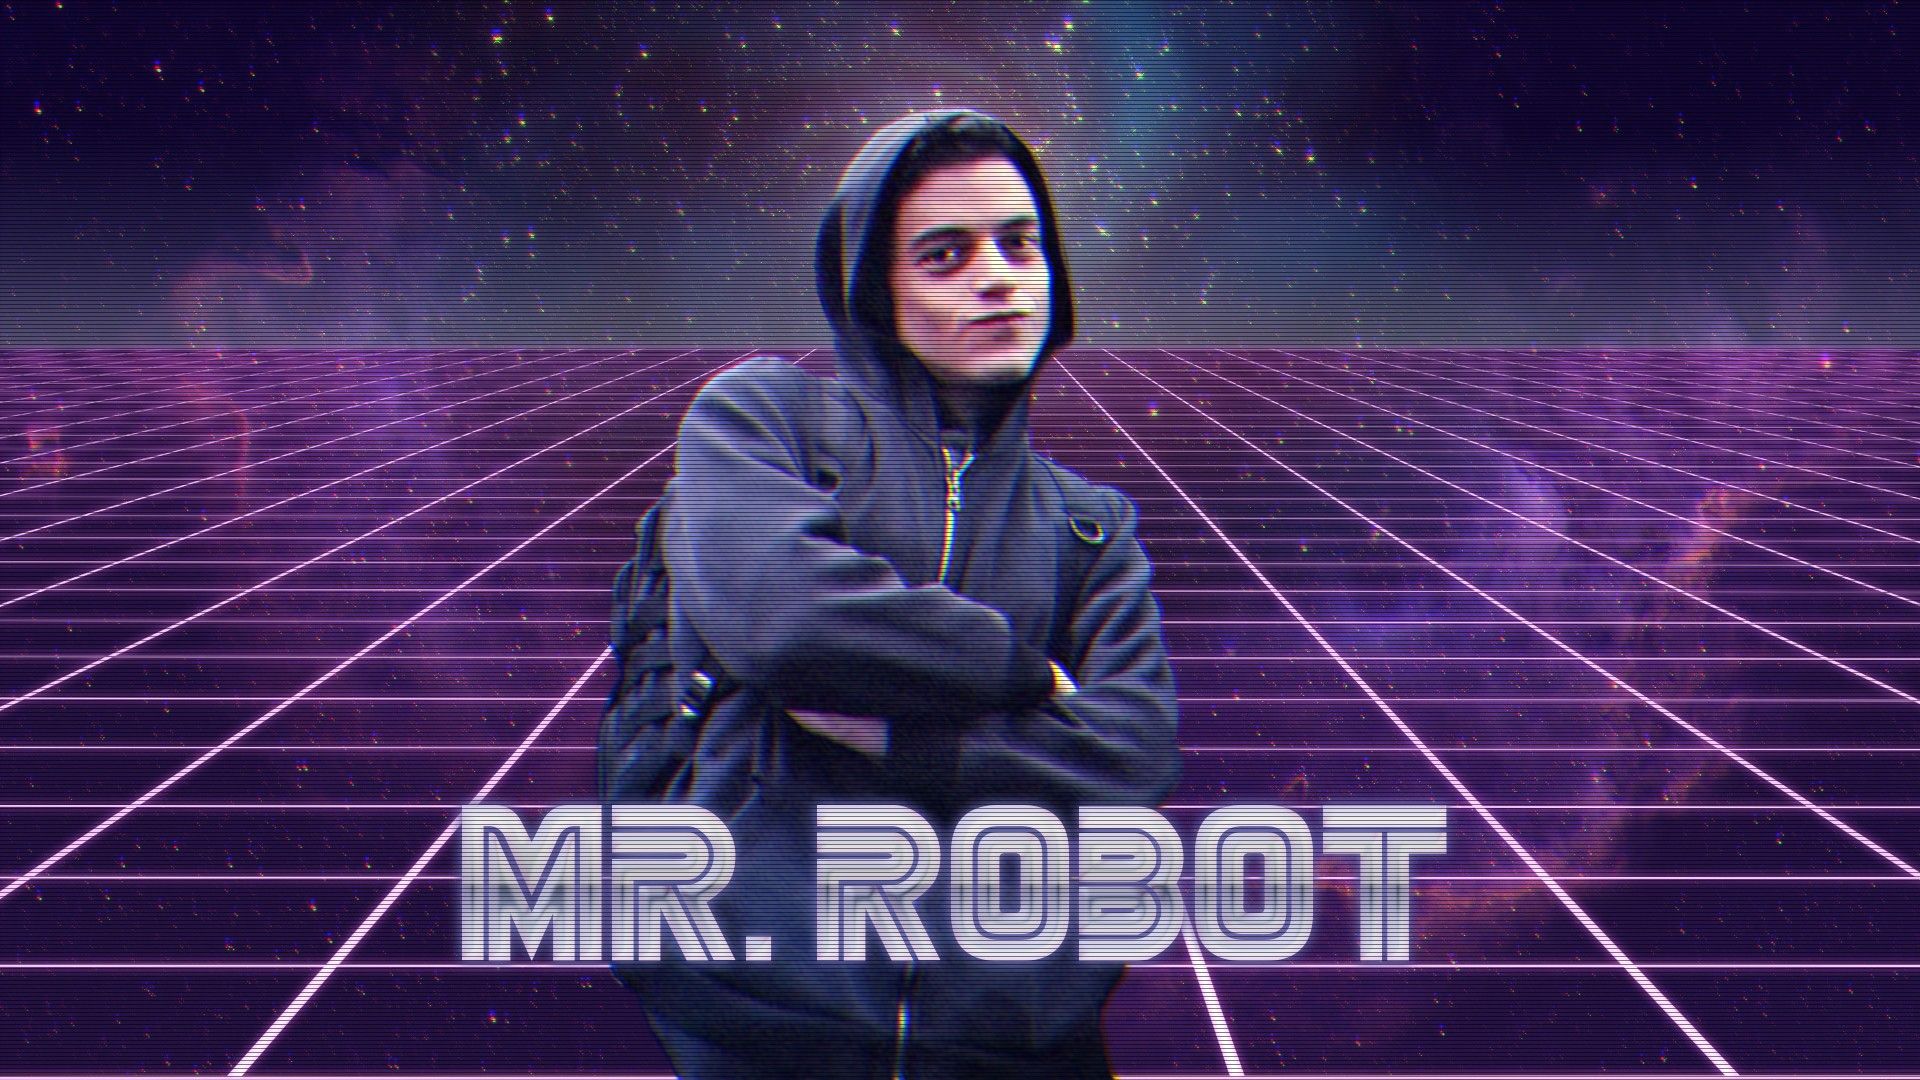 Mr Robot Hackerman Meme HD Wallpaper